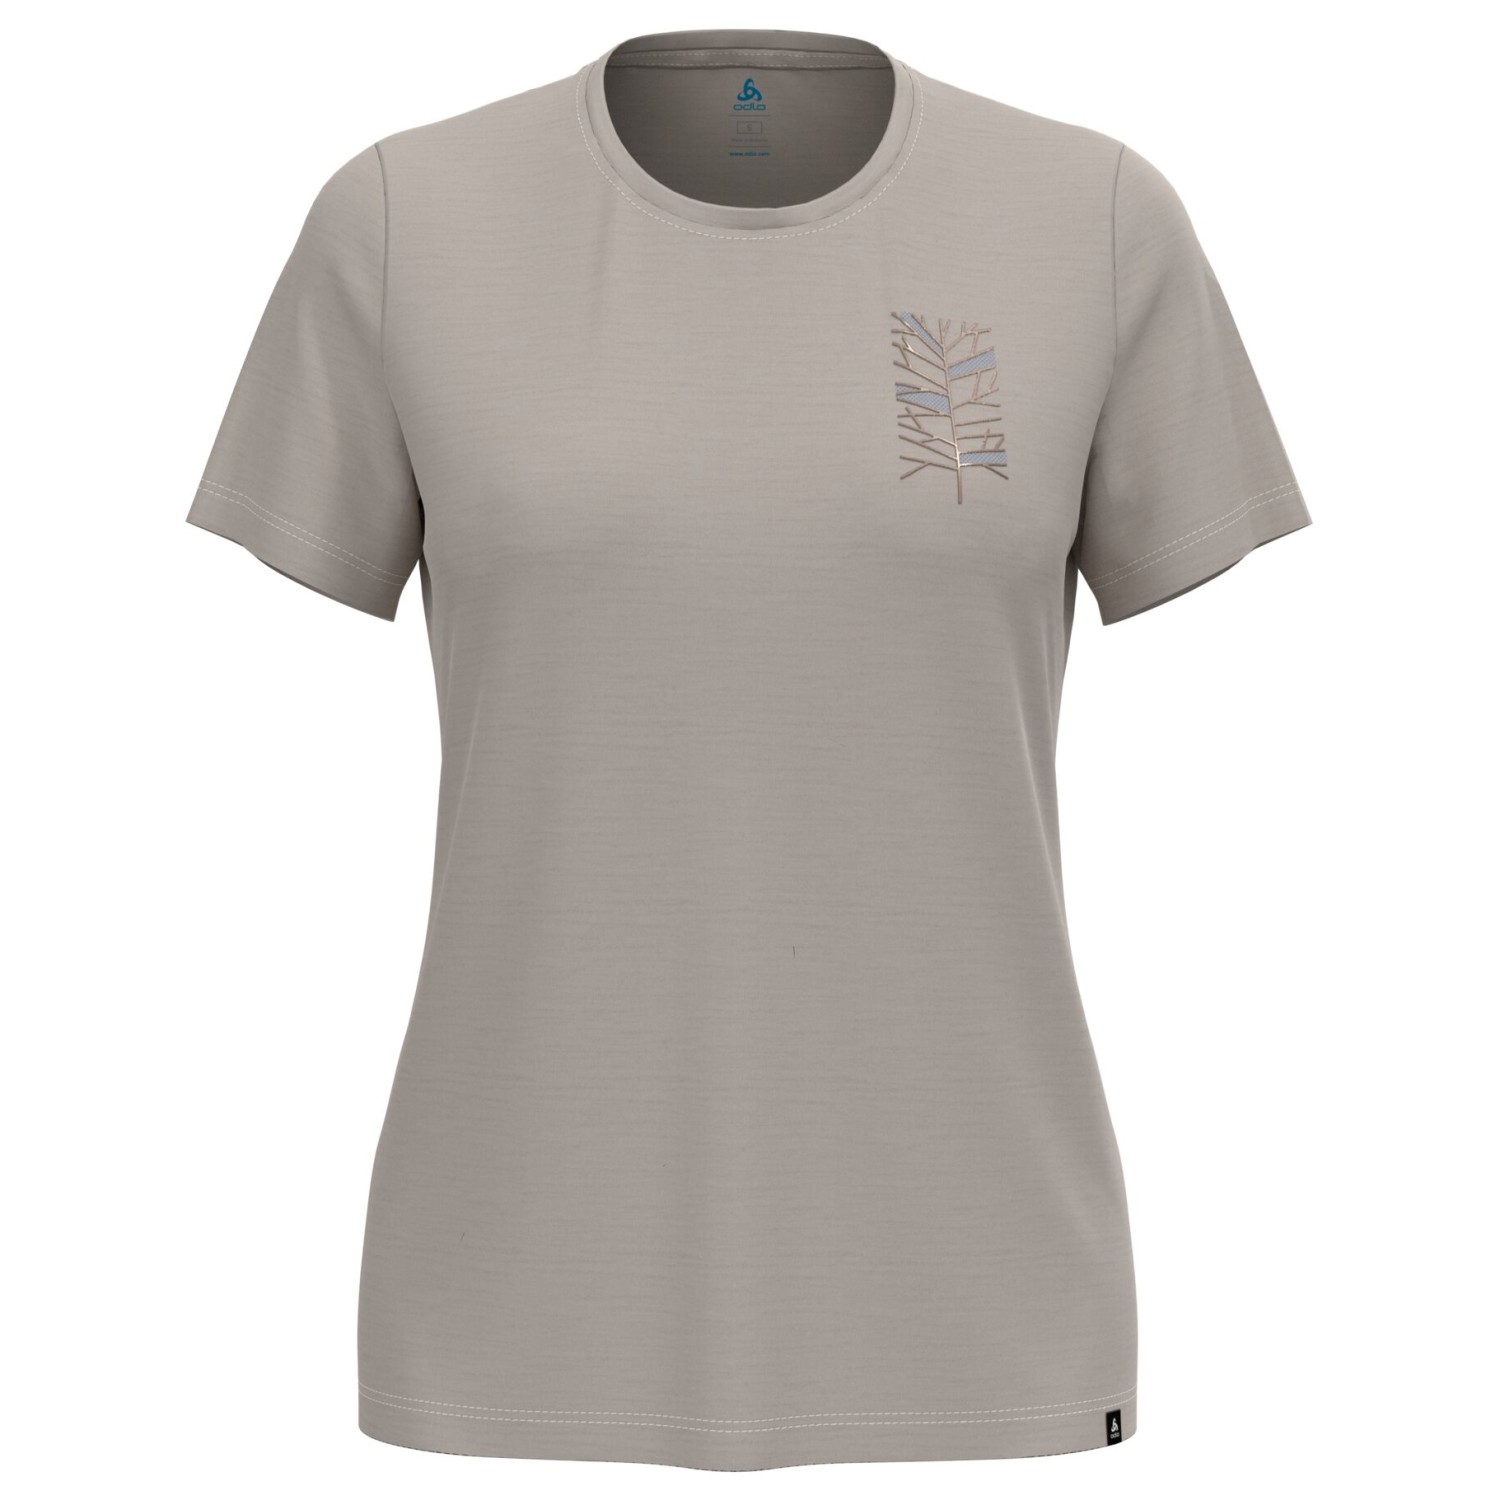 Рубашка из мериноса Odlo Women's Ascent Merino 160 Tree Crew Neck S/S, цвет Silver Cloud цена и фото